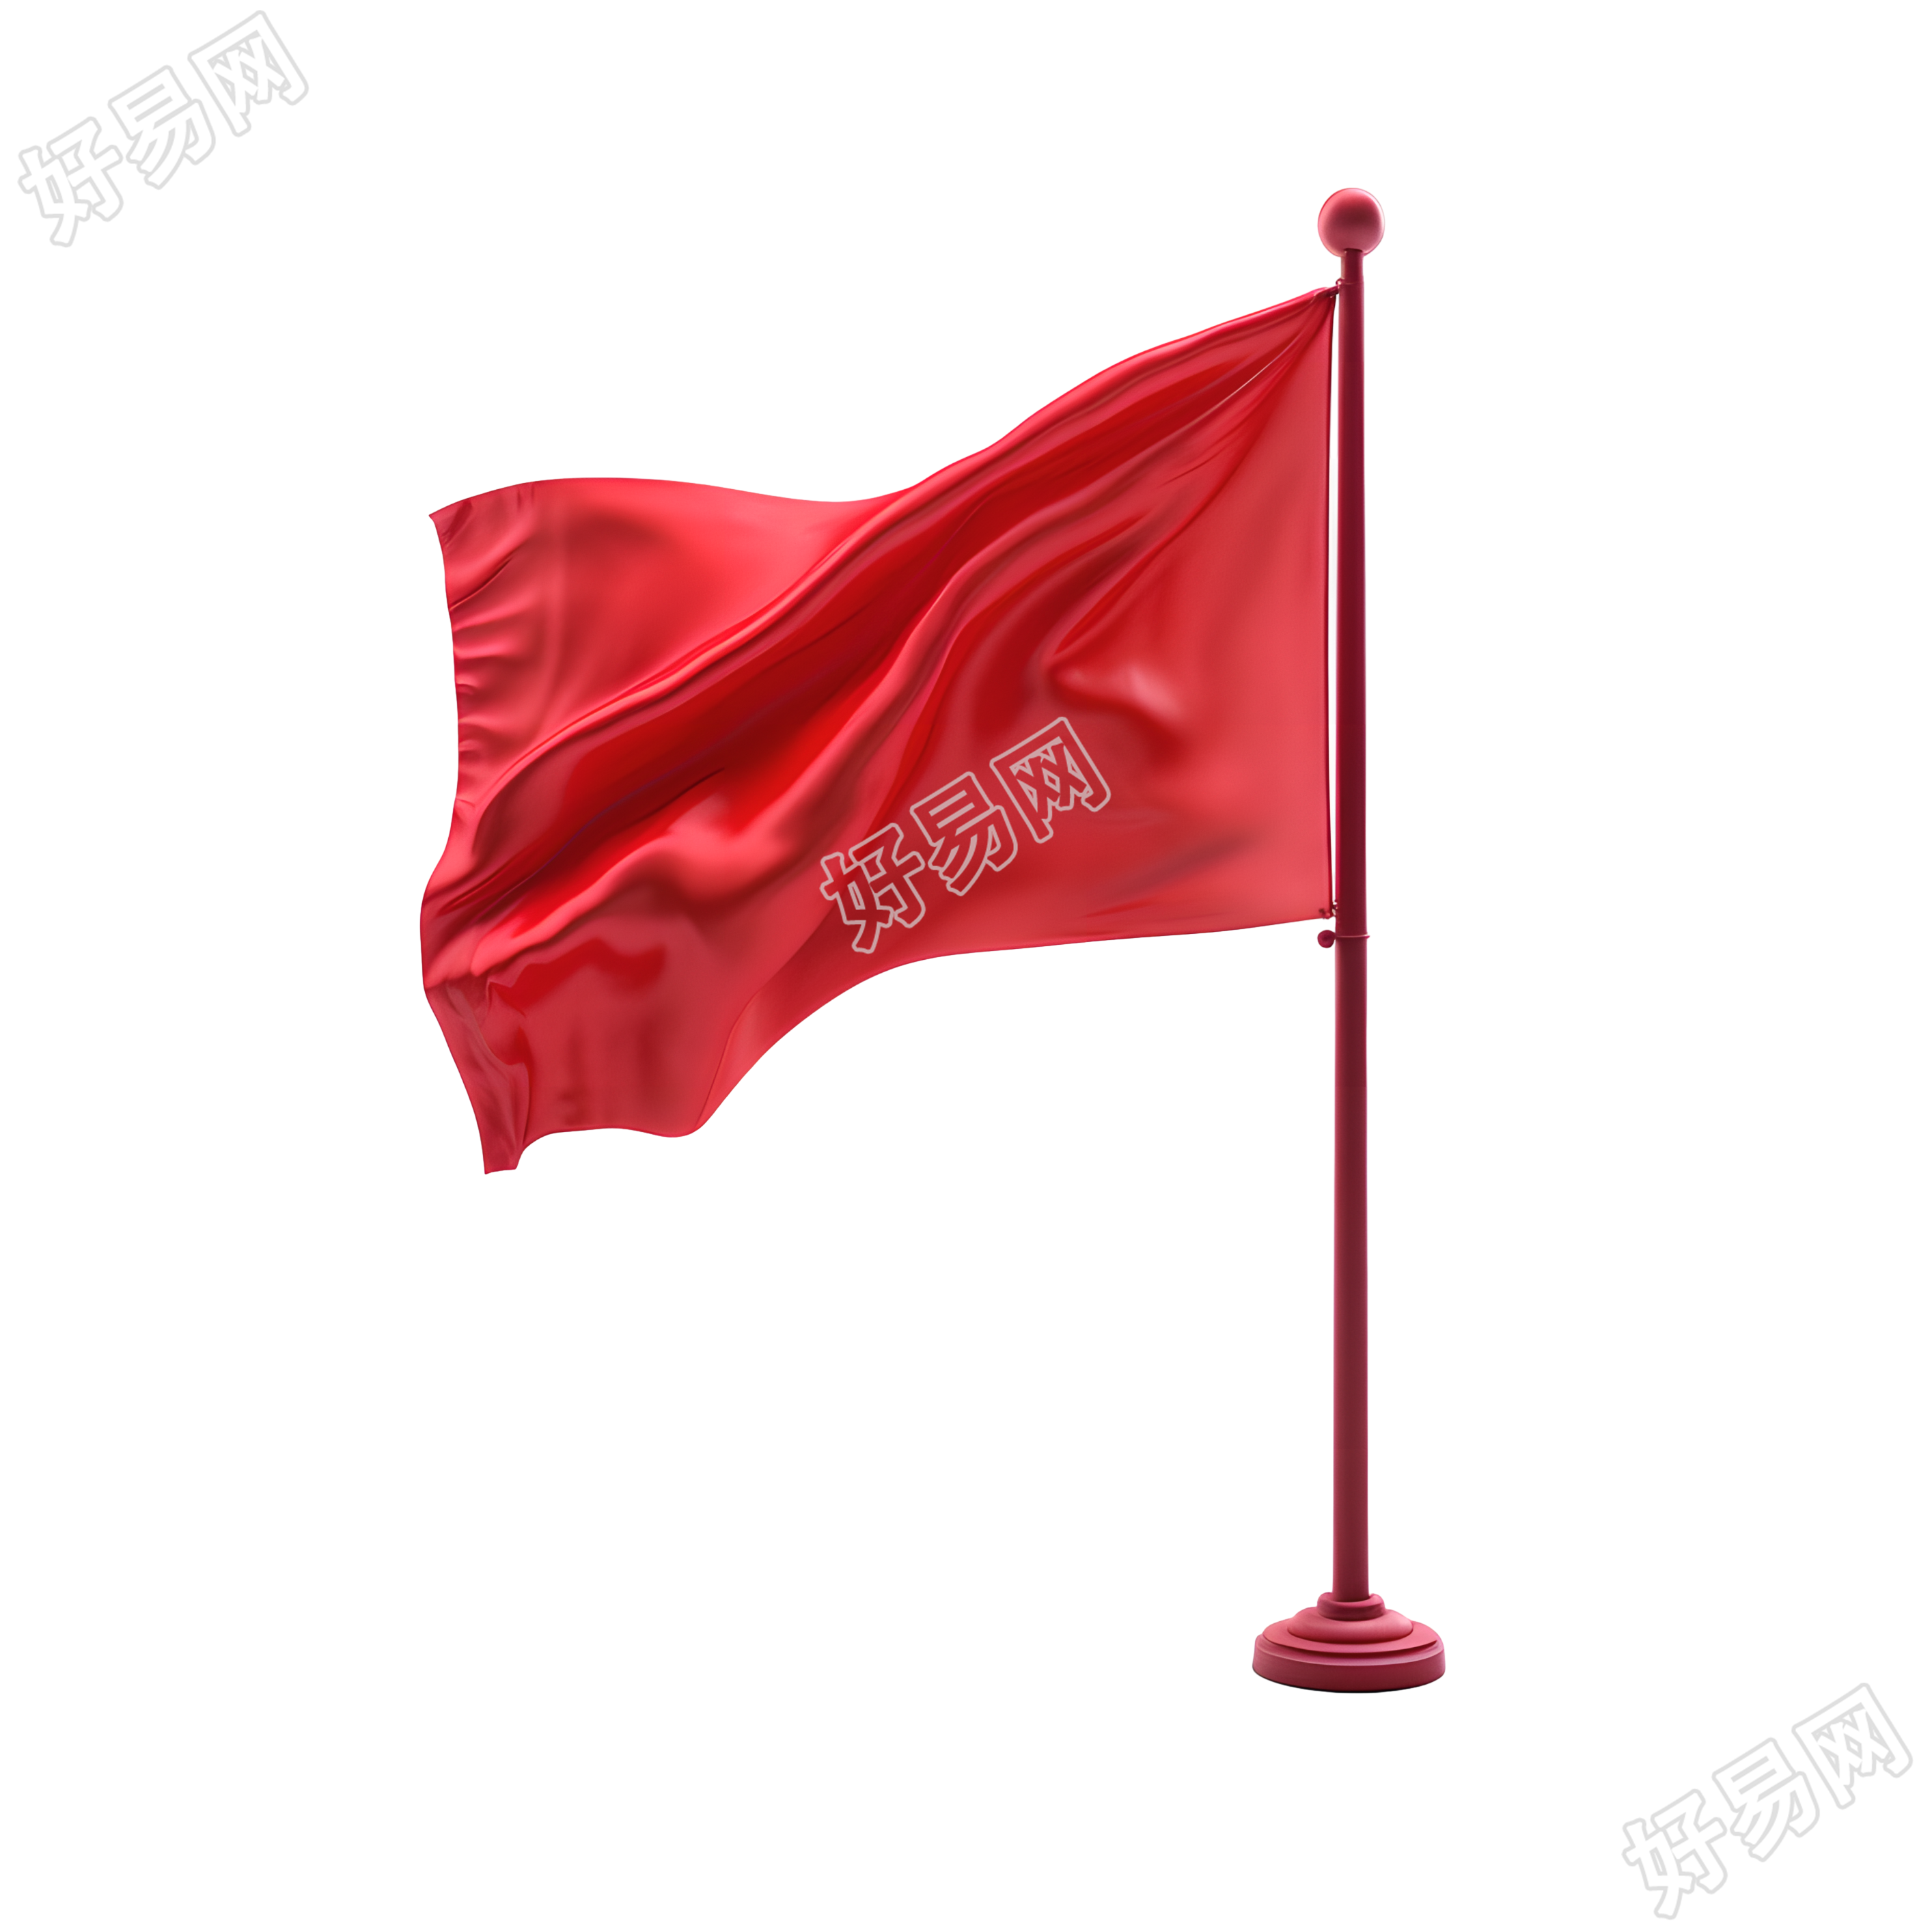 红旗在白色背景中飘扬的PNG图形素材